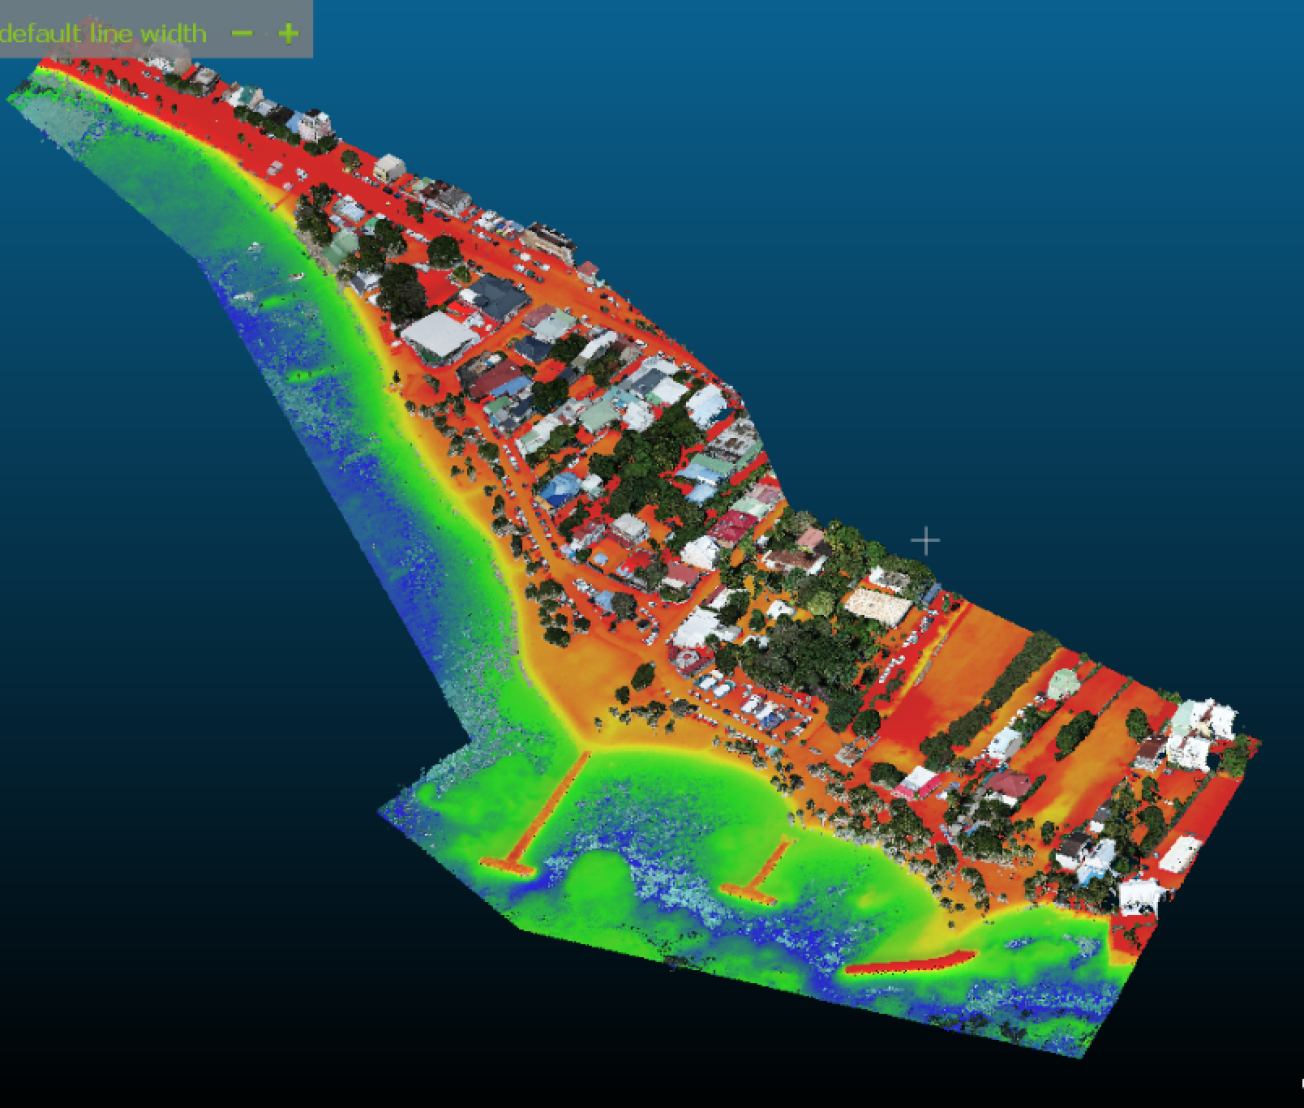 Exemple de modèle numérique de terrain de la plage du bourg de Sainte-Anne réalisé par photogrammétrie aérienne